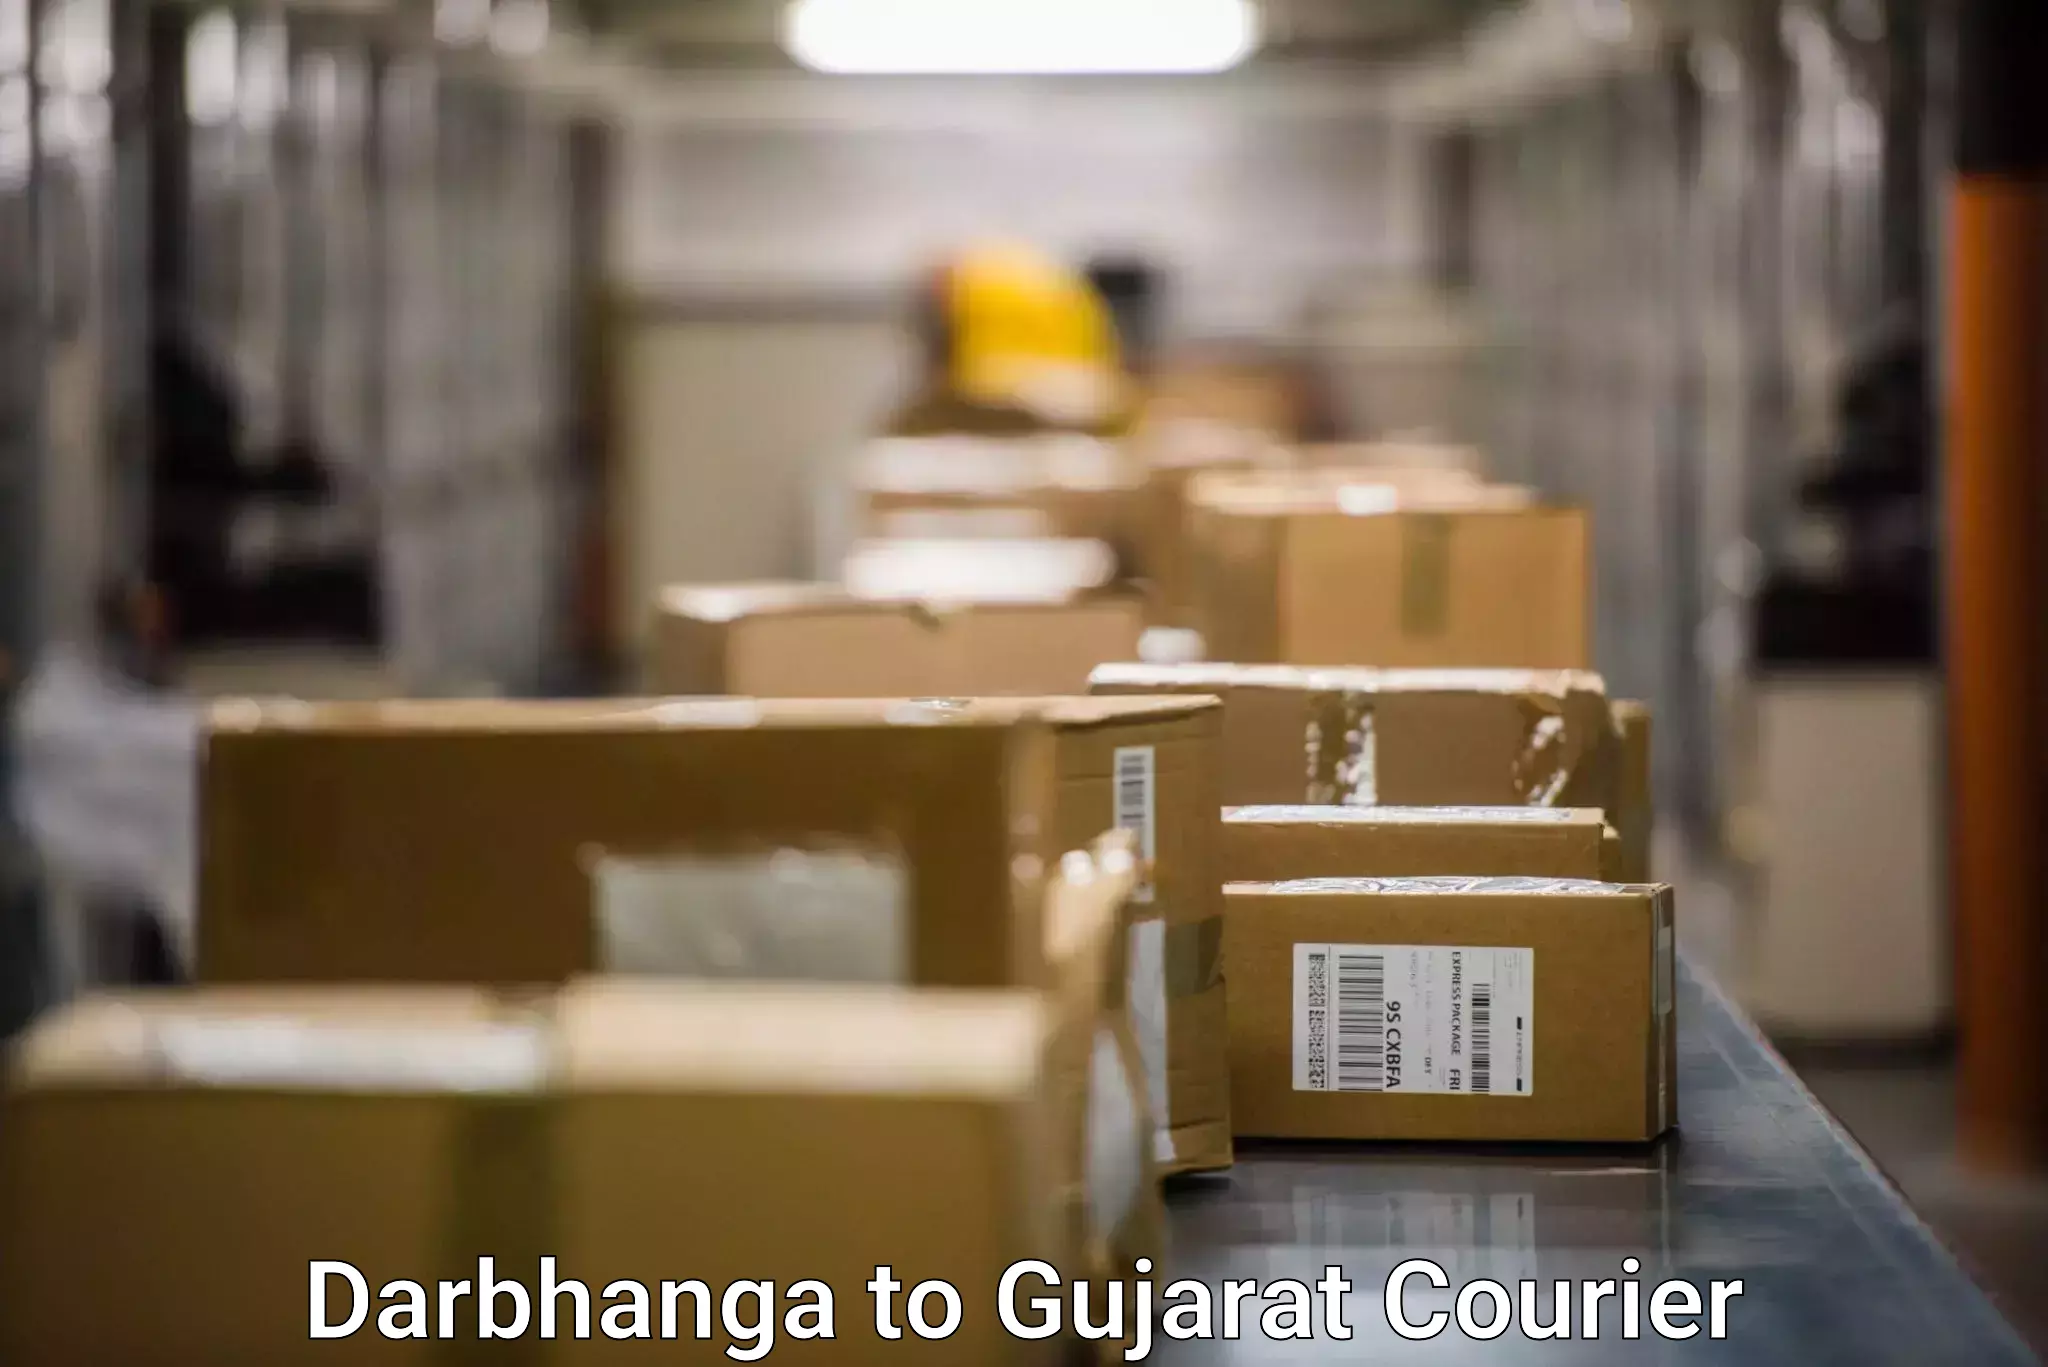 Global shipping solutions Darbhanga to Ahmedabad